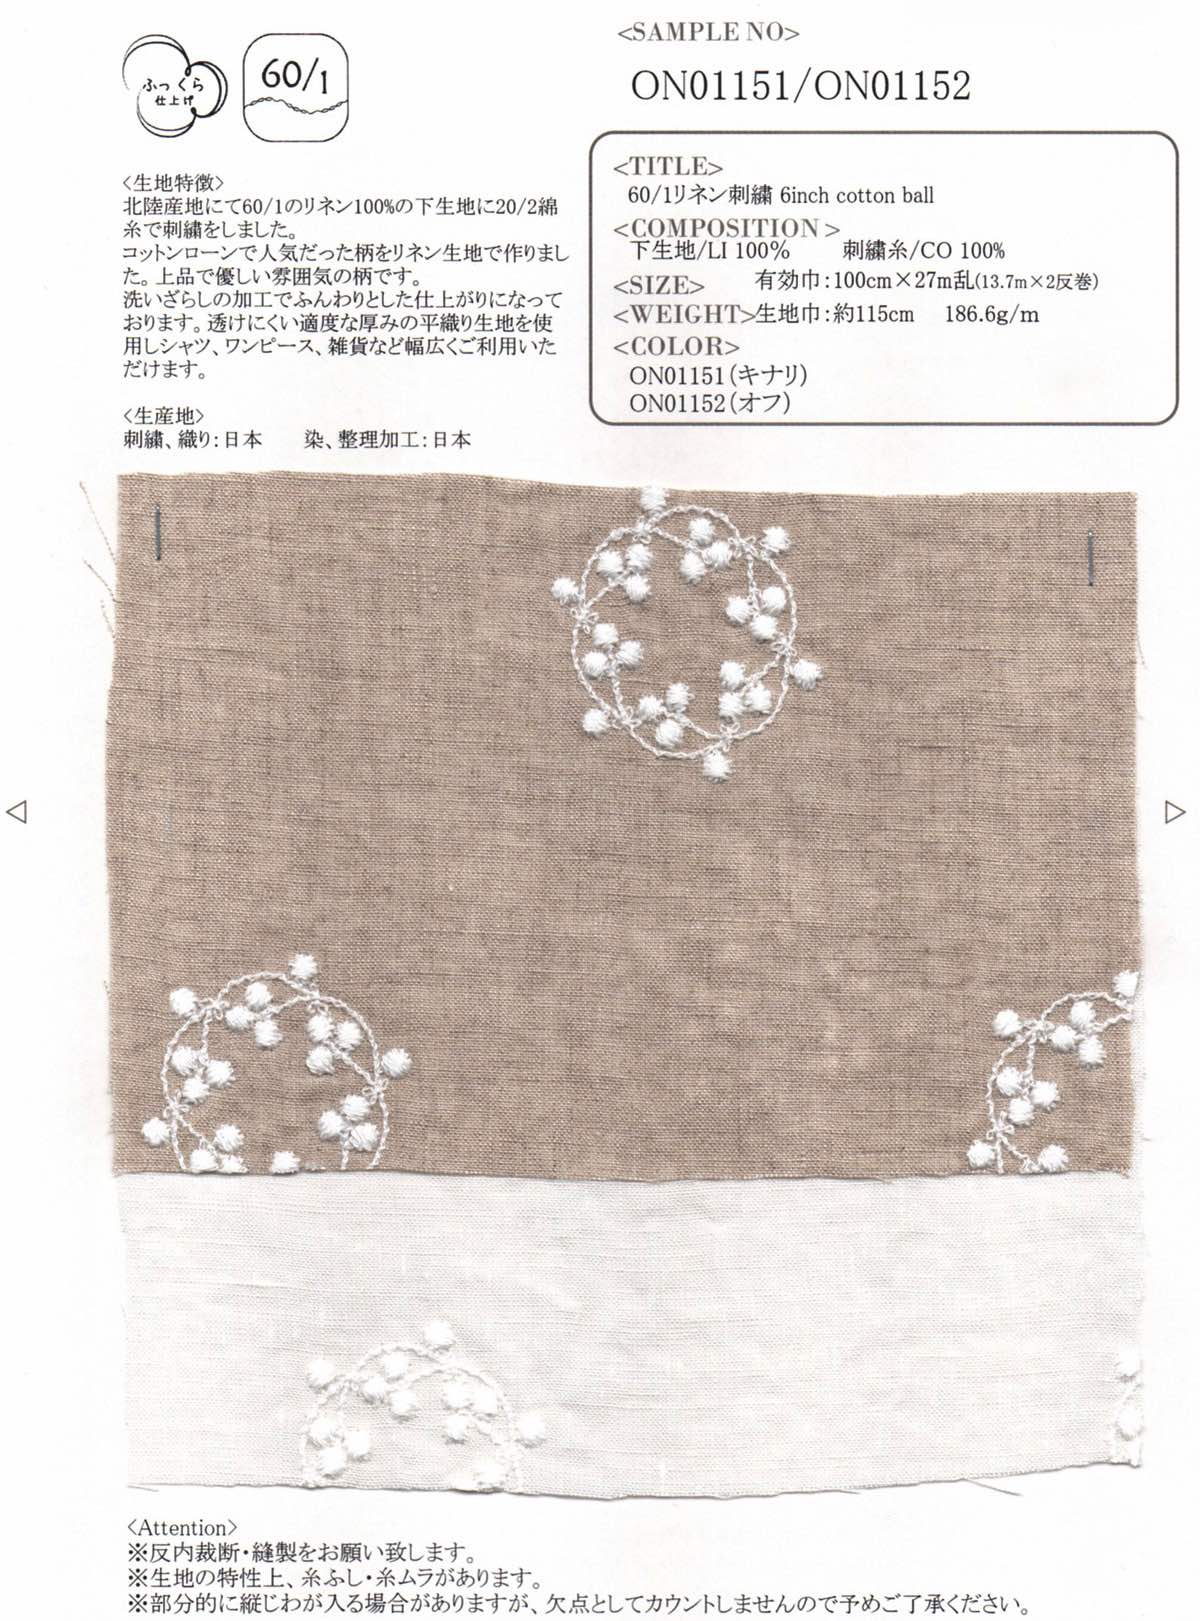 60/1リネン刺繍 6inch cotton ball（オフ）【ご注文は1反からの受付になります※納期約60日】